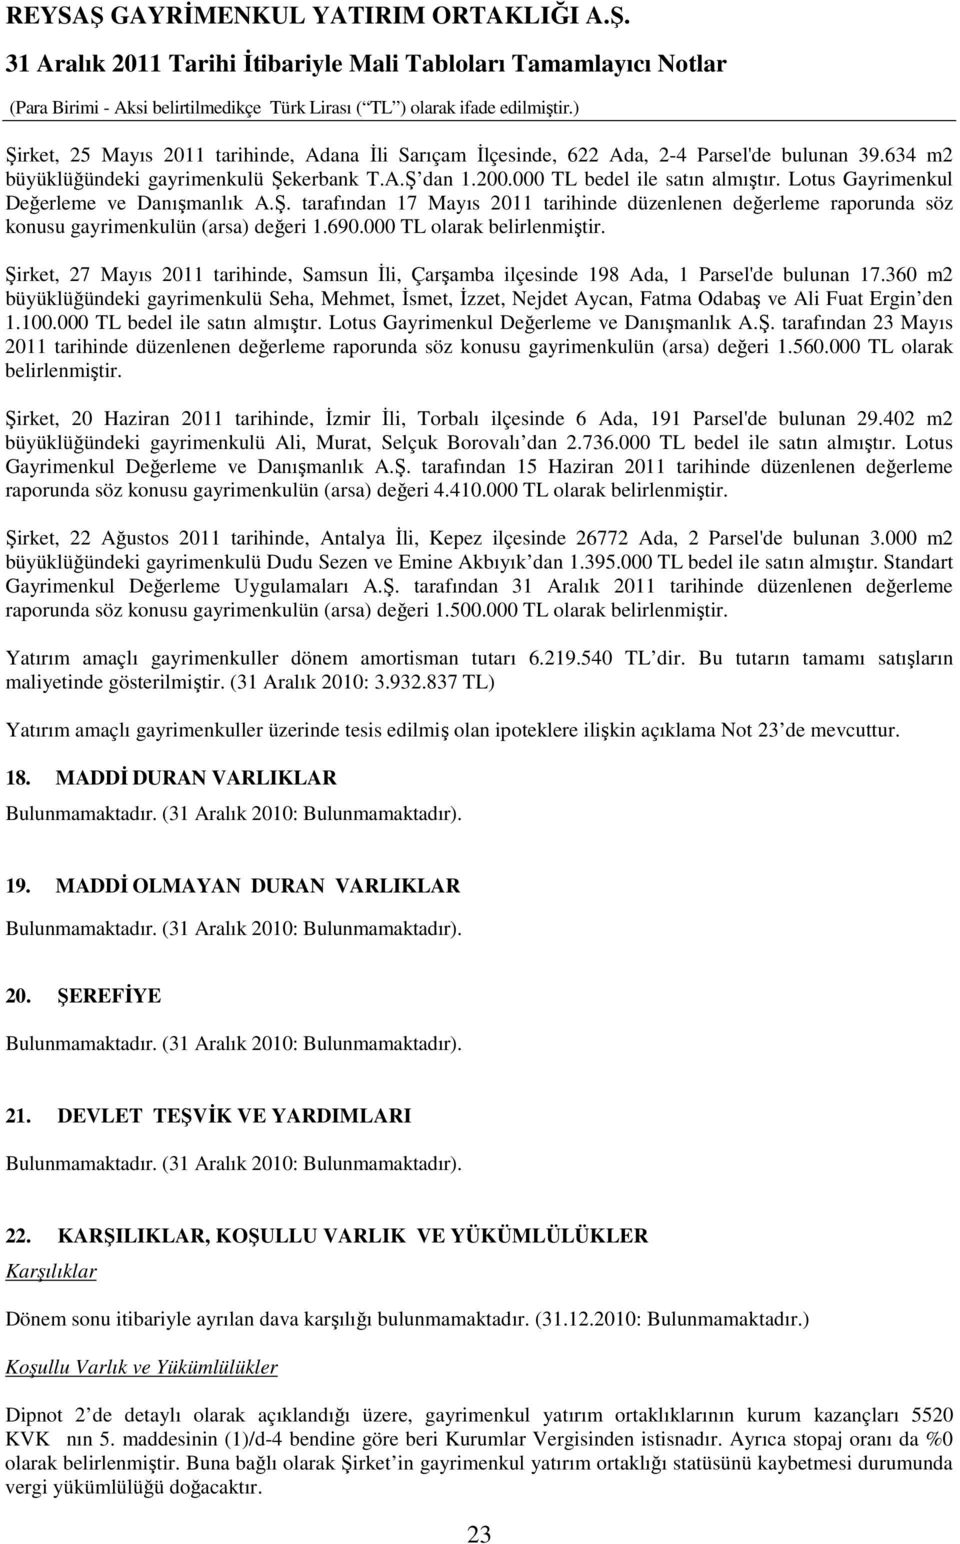 Şirket, 27 Mayıs 2011 tarihinde, Samsun Đli, Çarşamba ilçesinde 198 Ada, 1 Parsel'de bulunan 17.